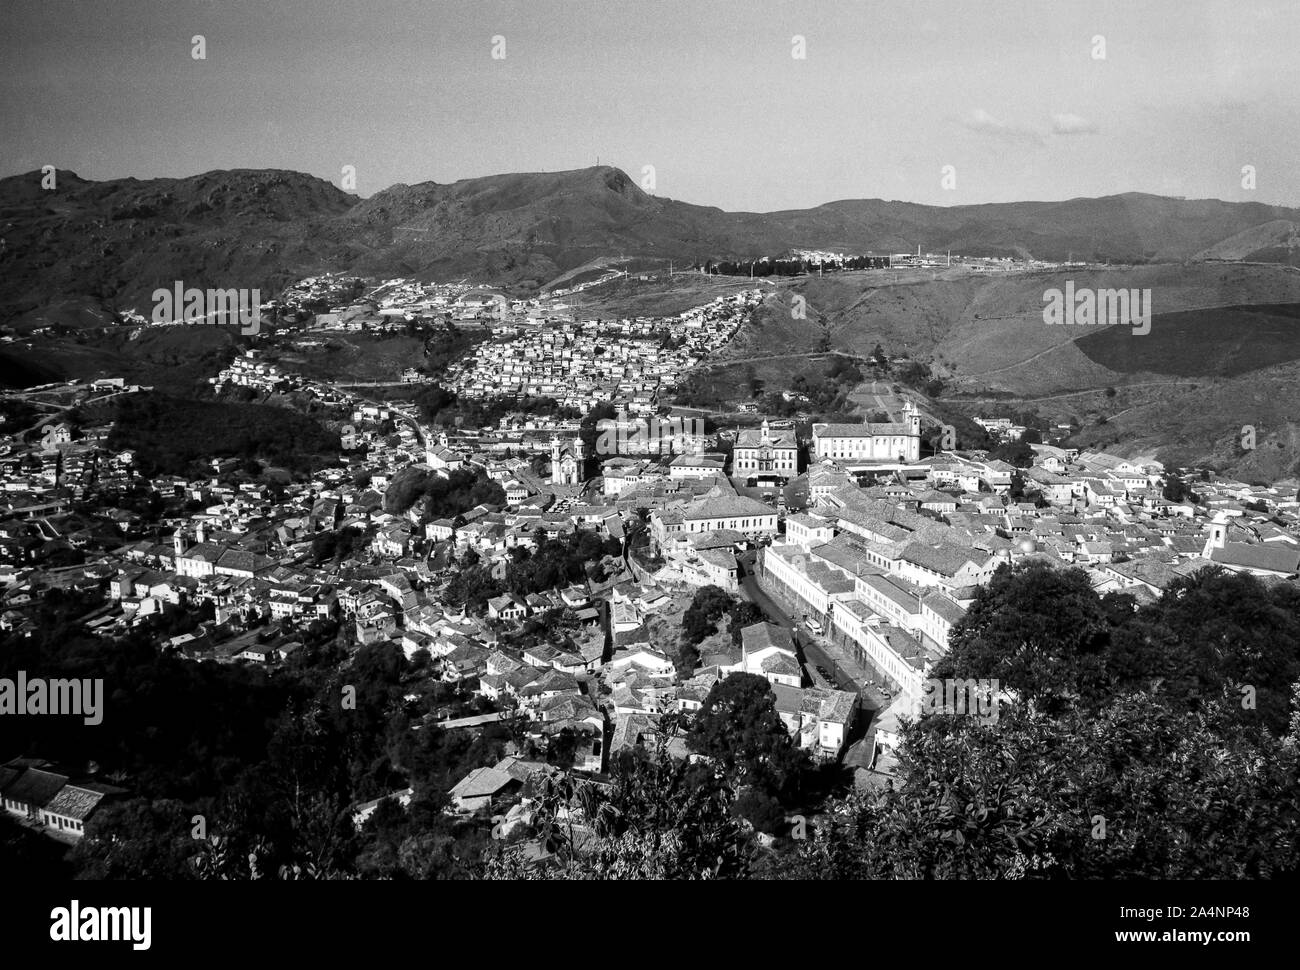 Brasil, Minas Gerais, Ouro Preto: panorama de la ciudad de Ouro Preto Foto de stock